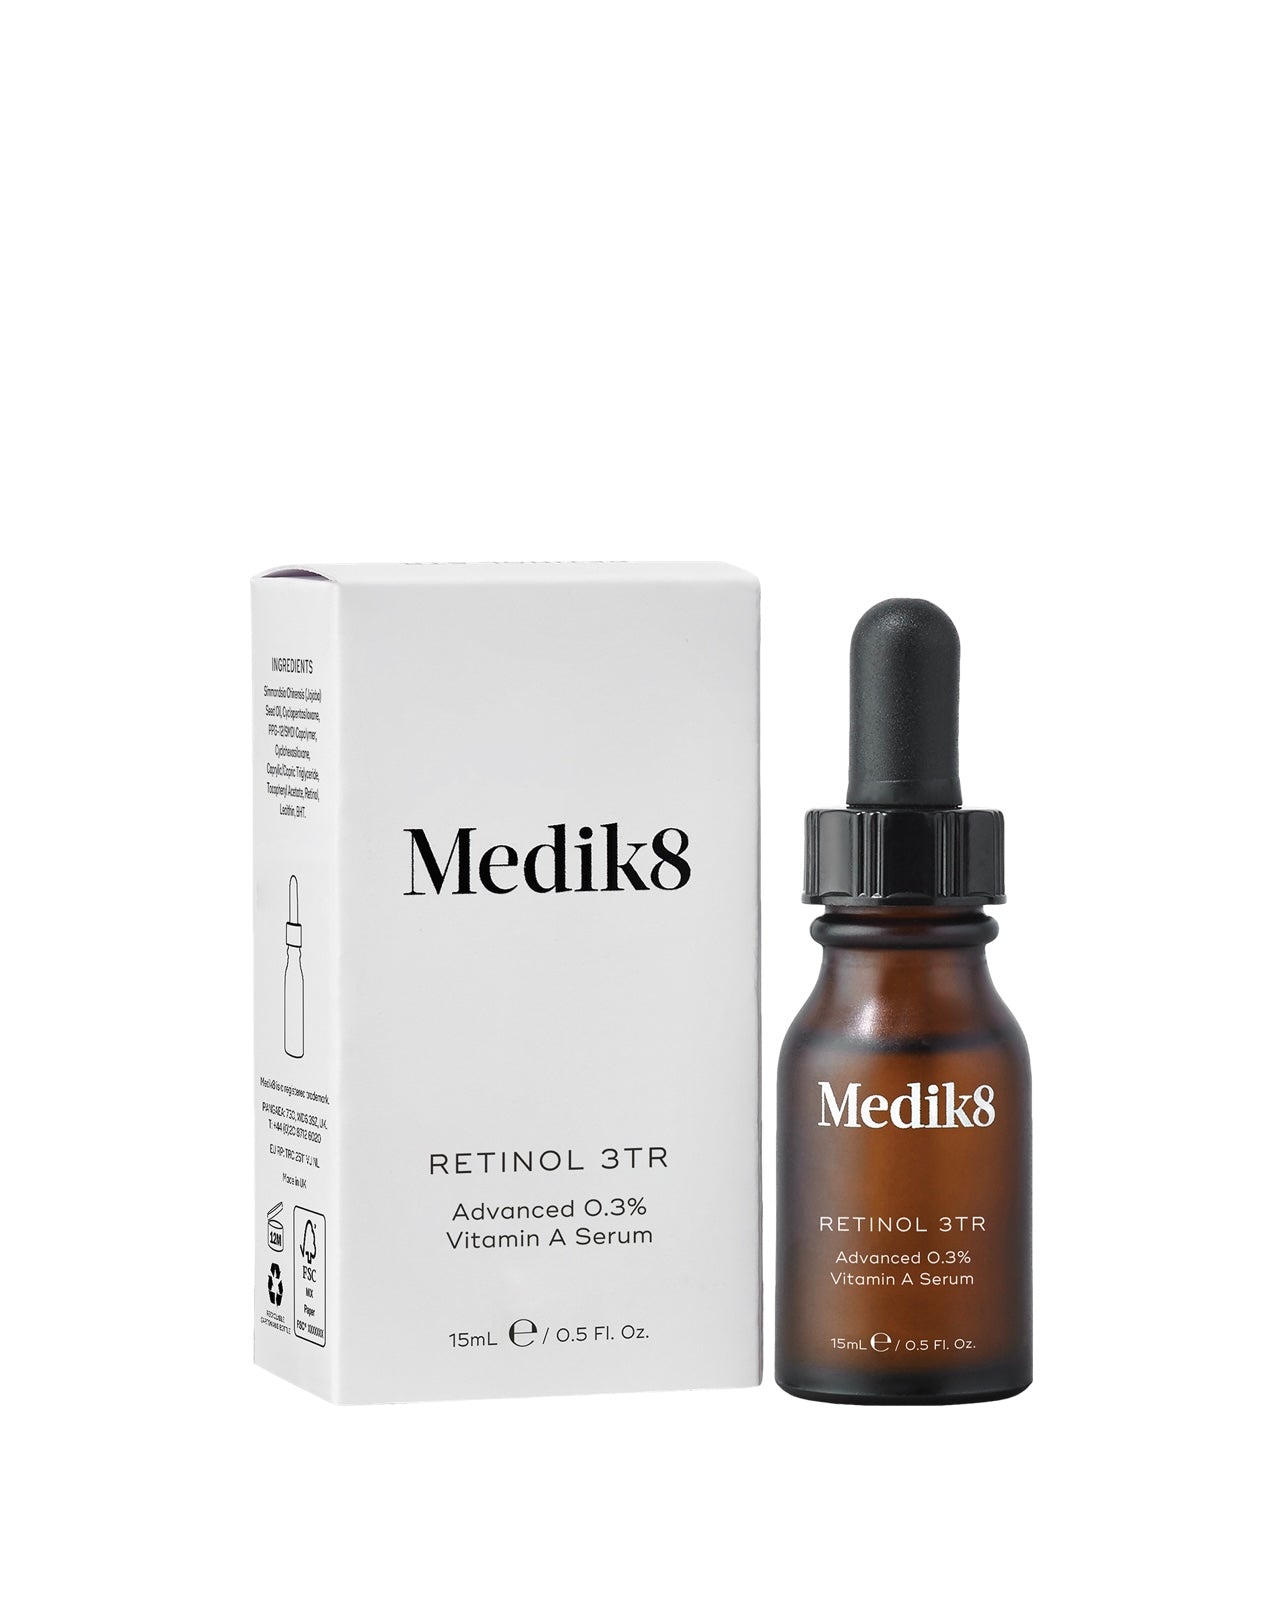 Medik8 Retinol 3TR Advanced 0.3% Vitamin A Serum 15ml